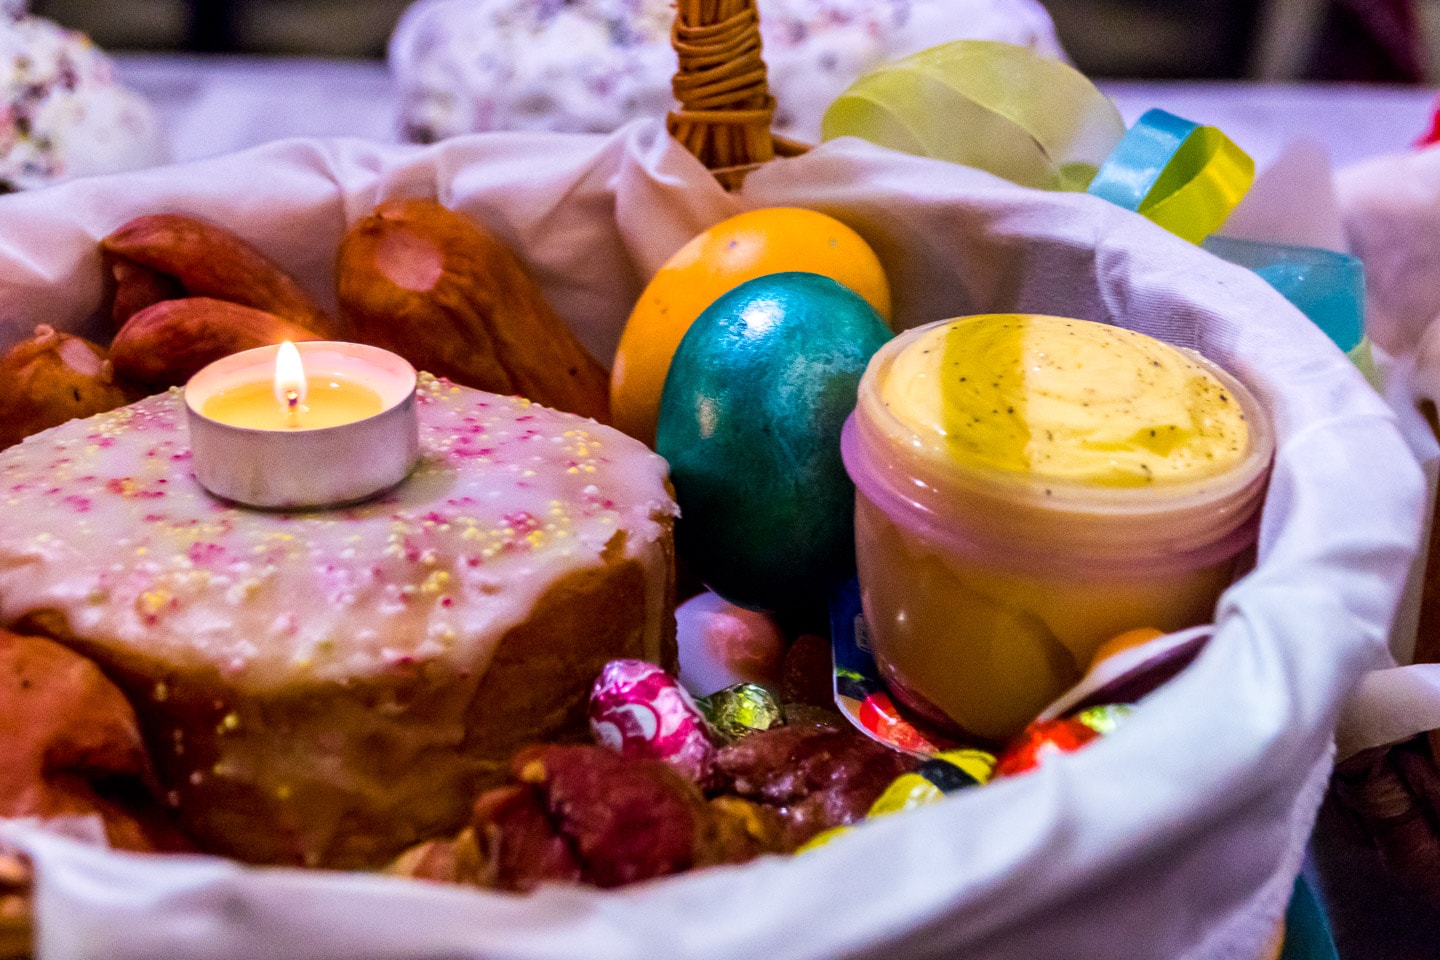 Fotos: Celebración de la Pascua Ucraniana en la capital grancanaria 